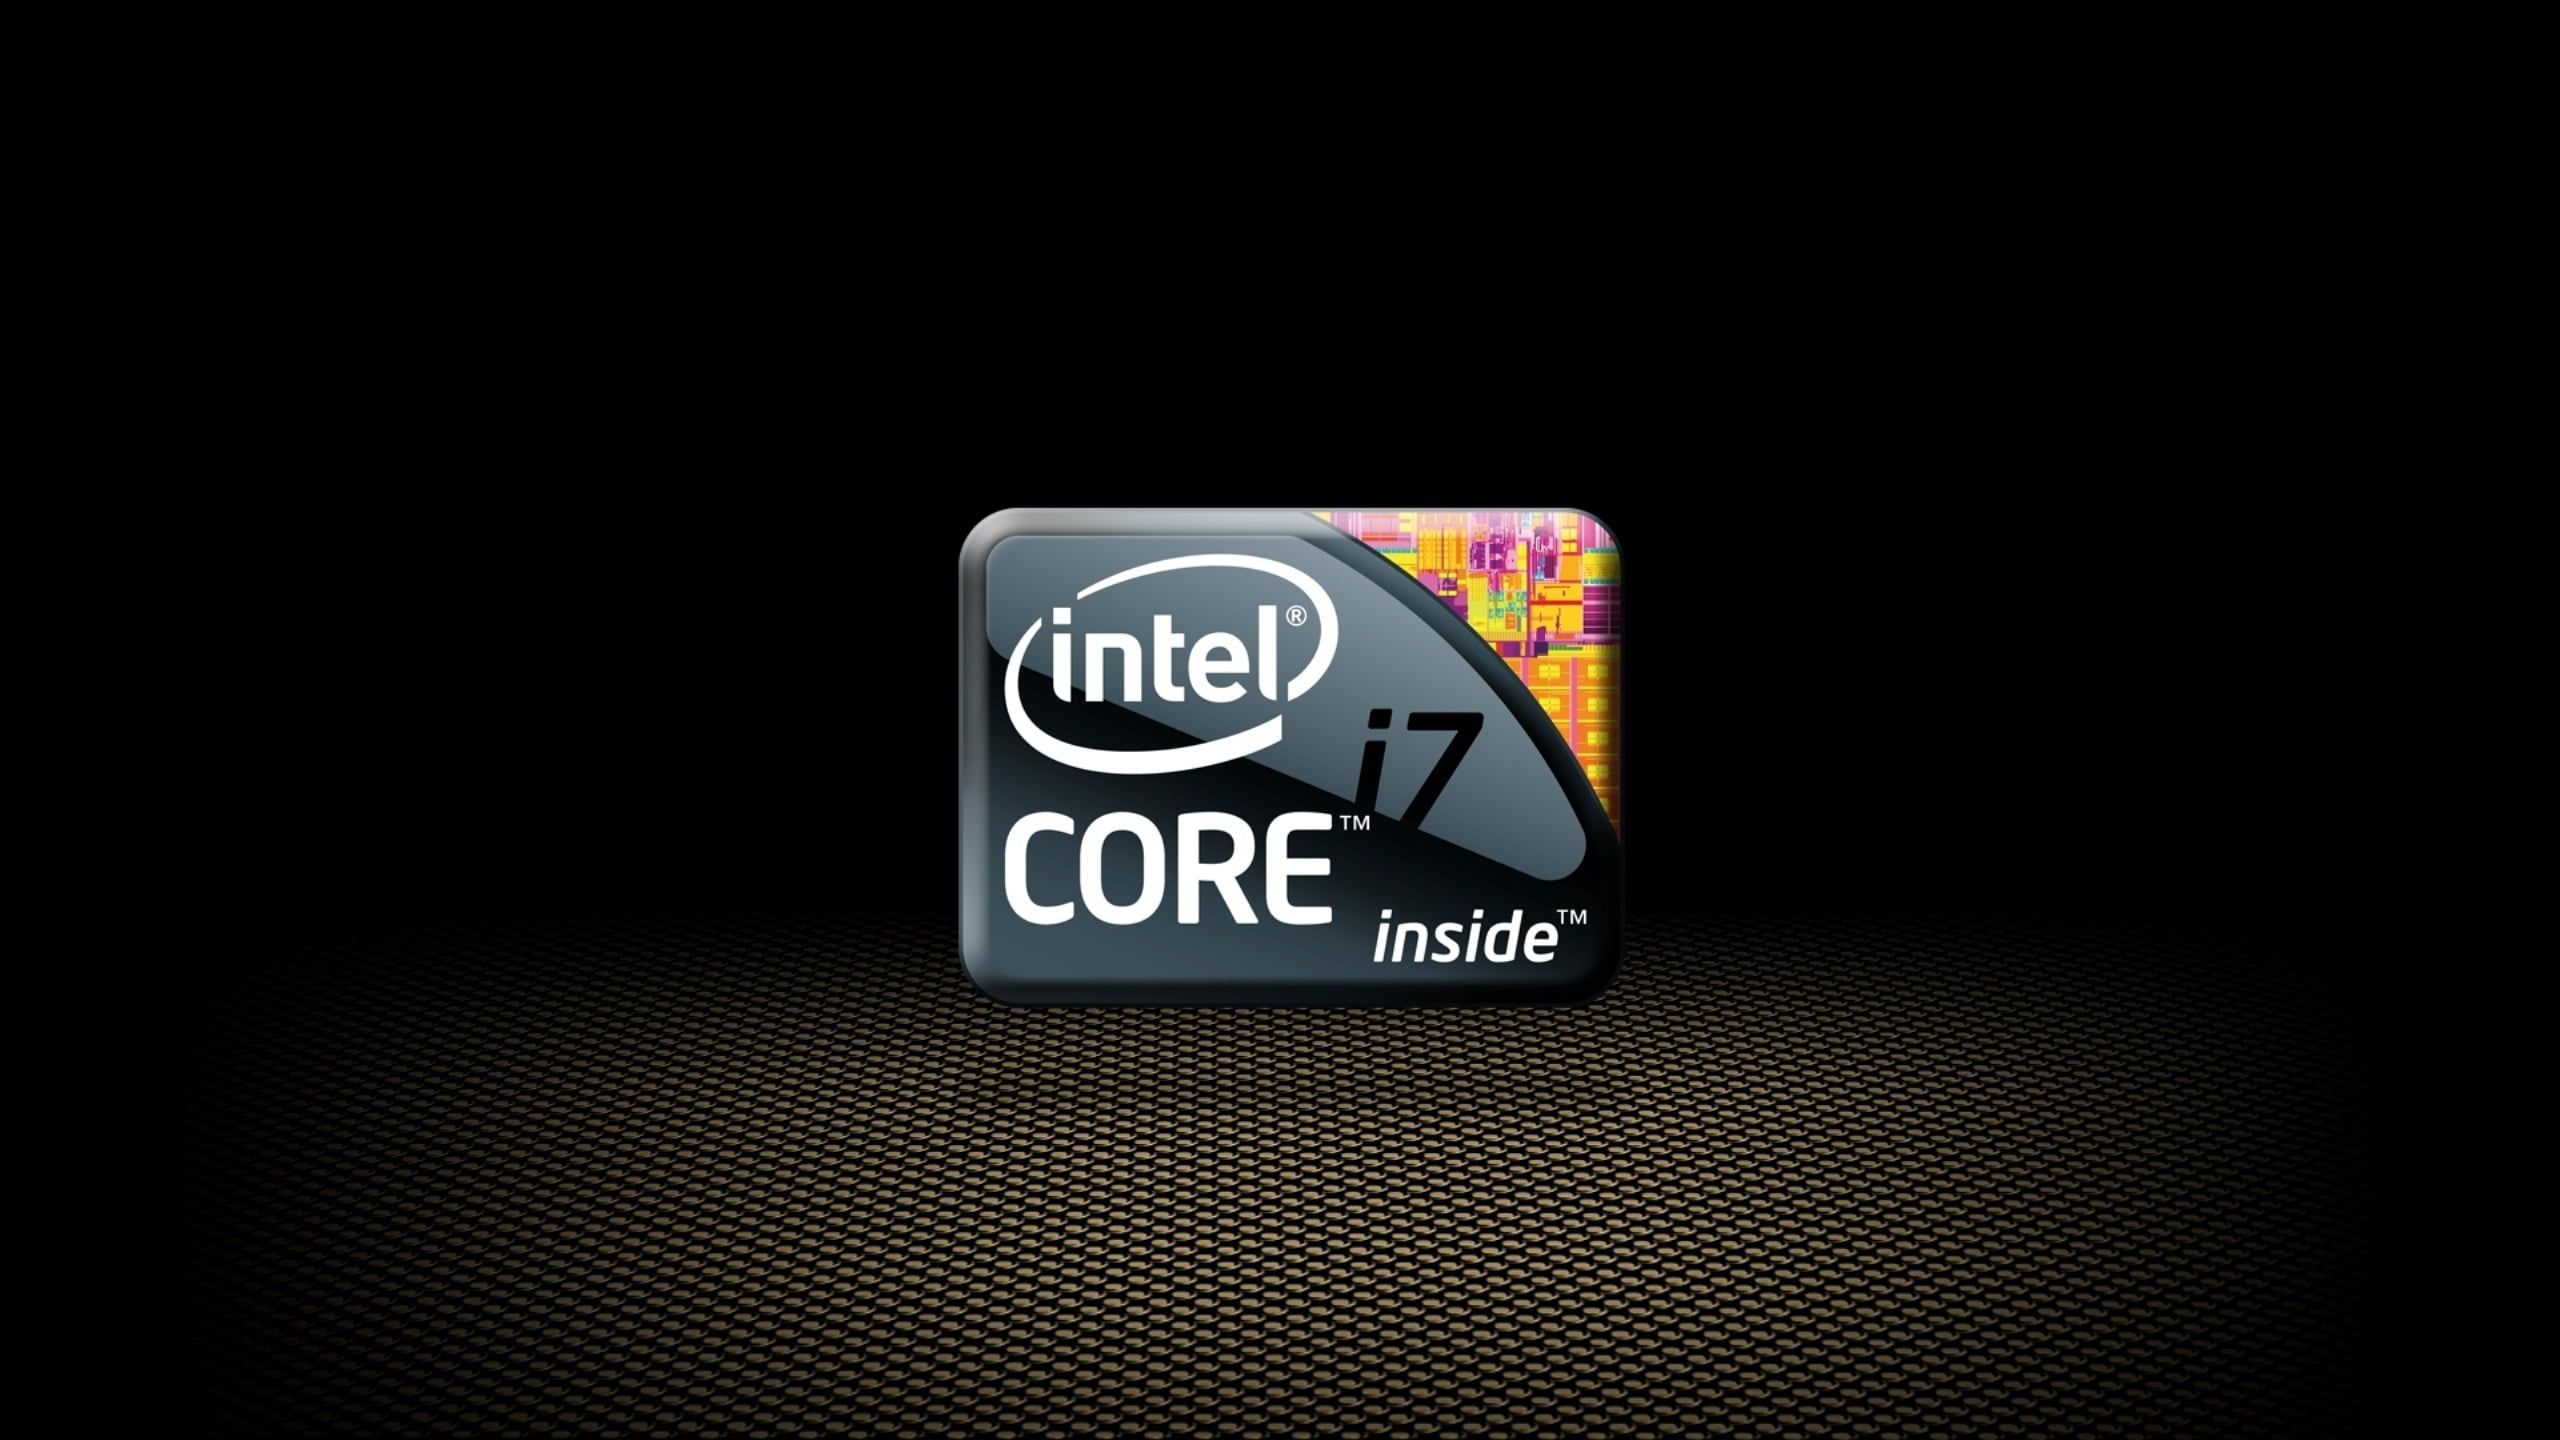 Intel Core i7 sticker #intel #processor #gray #black #i7 K #wallpaper #hdwallpaper #desktop. Intel, Hi tech wallpaper, Intel processors